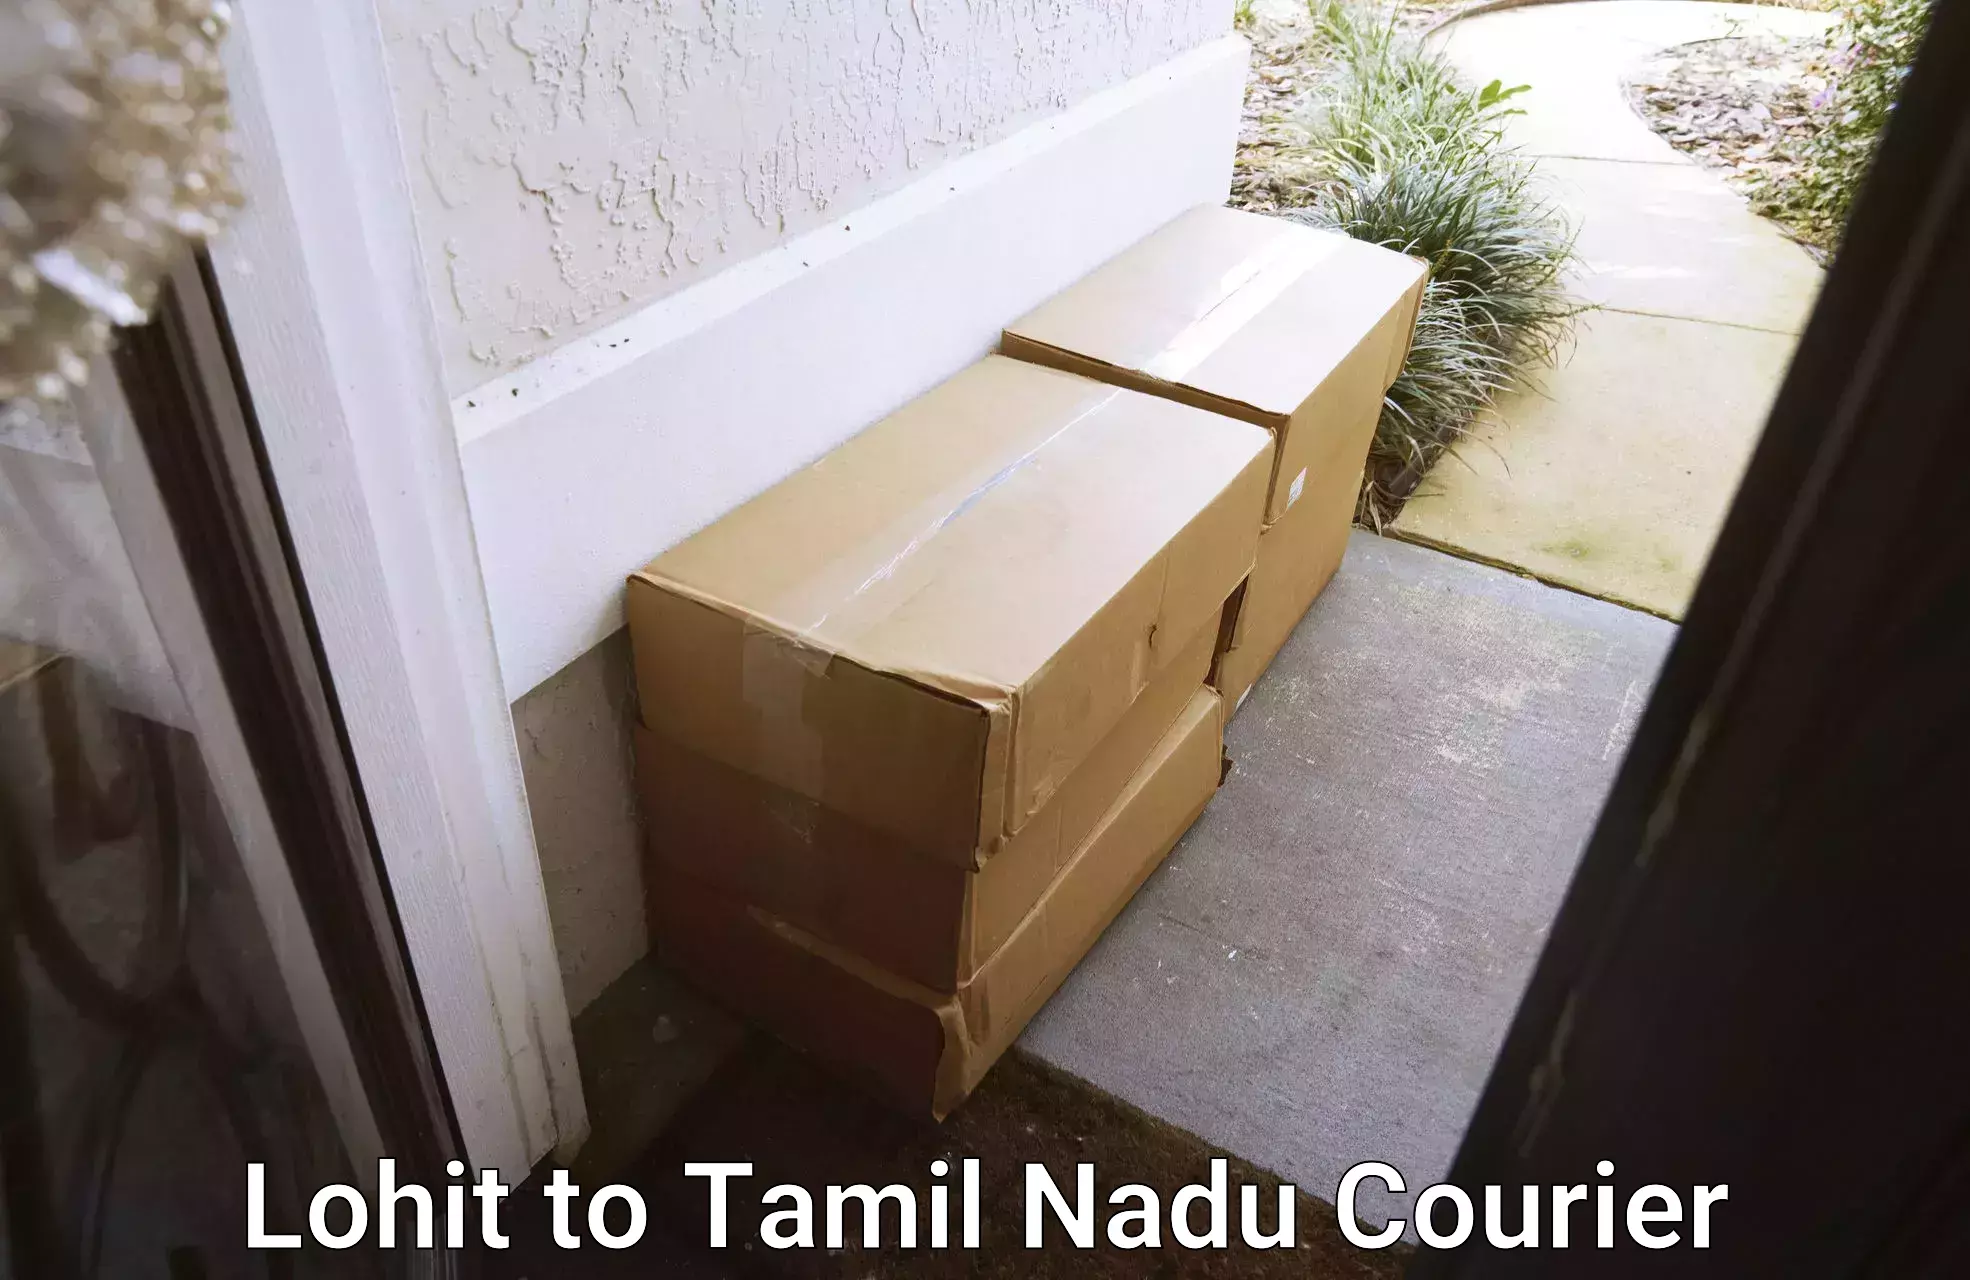 Courier services Lohit to Perundurai